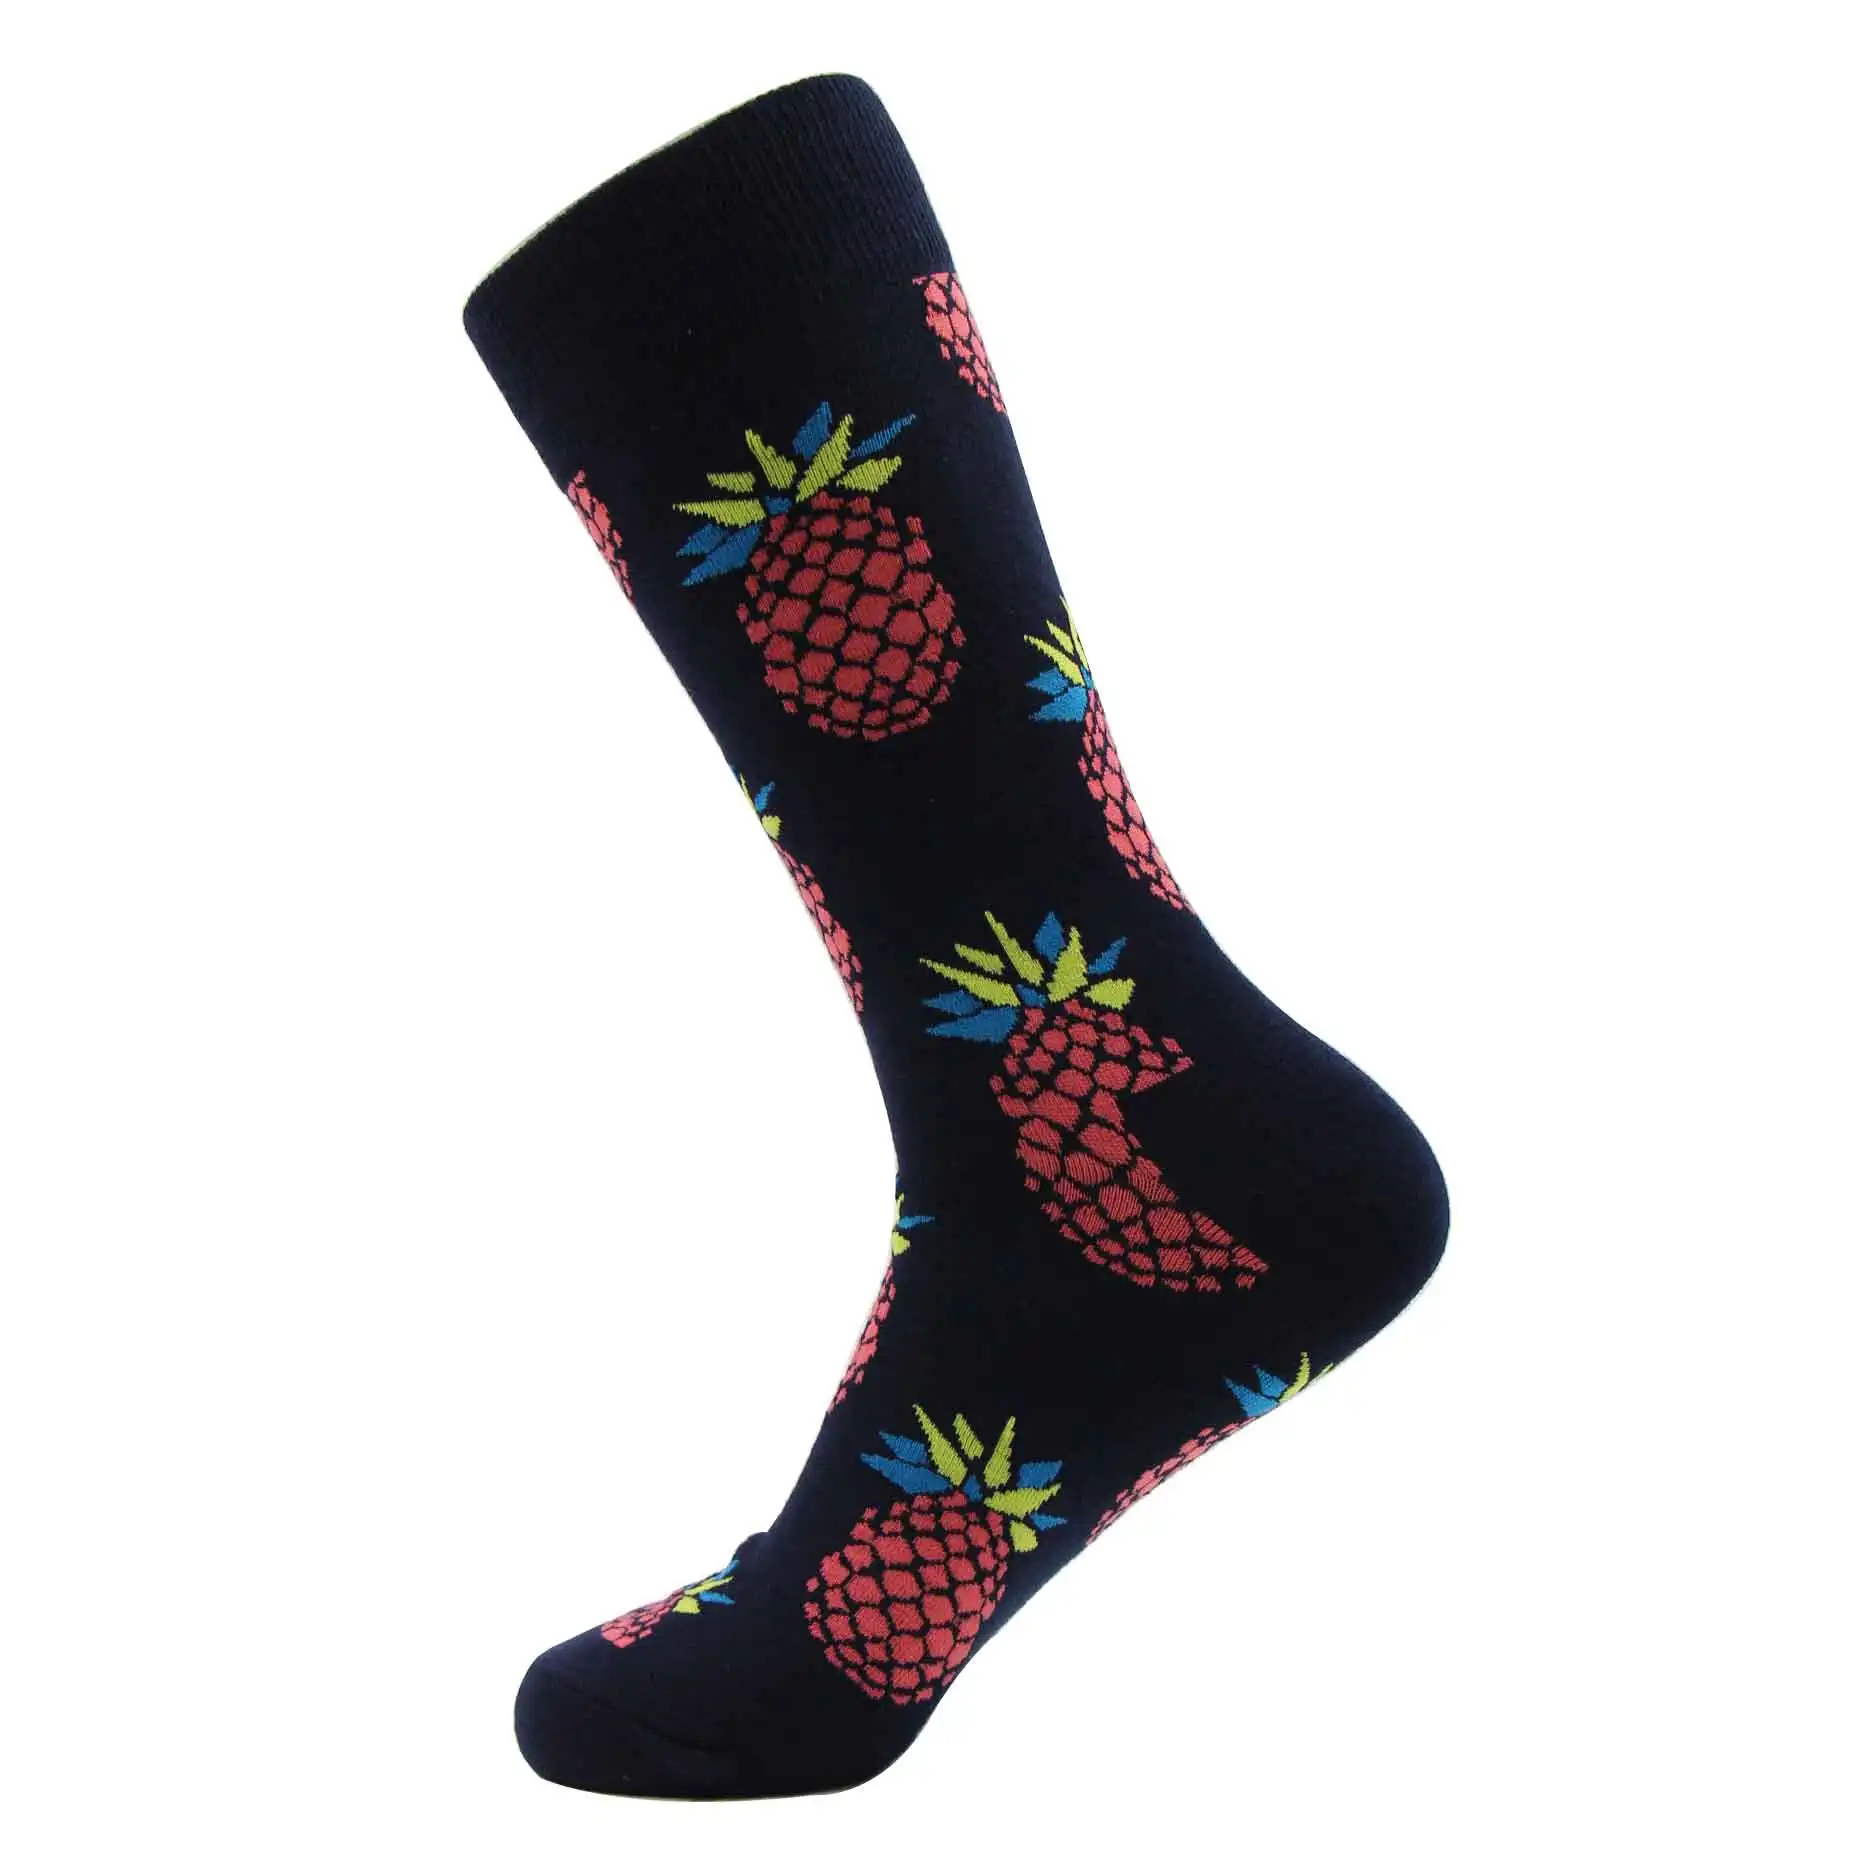 WH SOKKEN забавные мужские новые носки из чесаного хлопка шар с водородом компрессионный хип-хоп Повседневный стиль для новинок подарки 25 цветов - Цвет: SKFR002